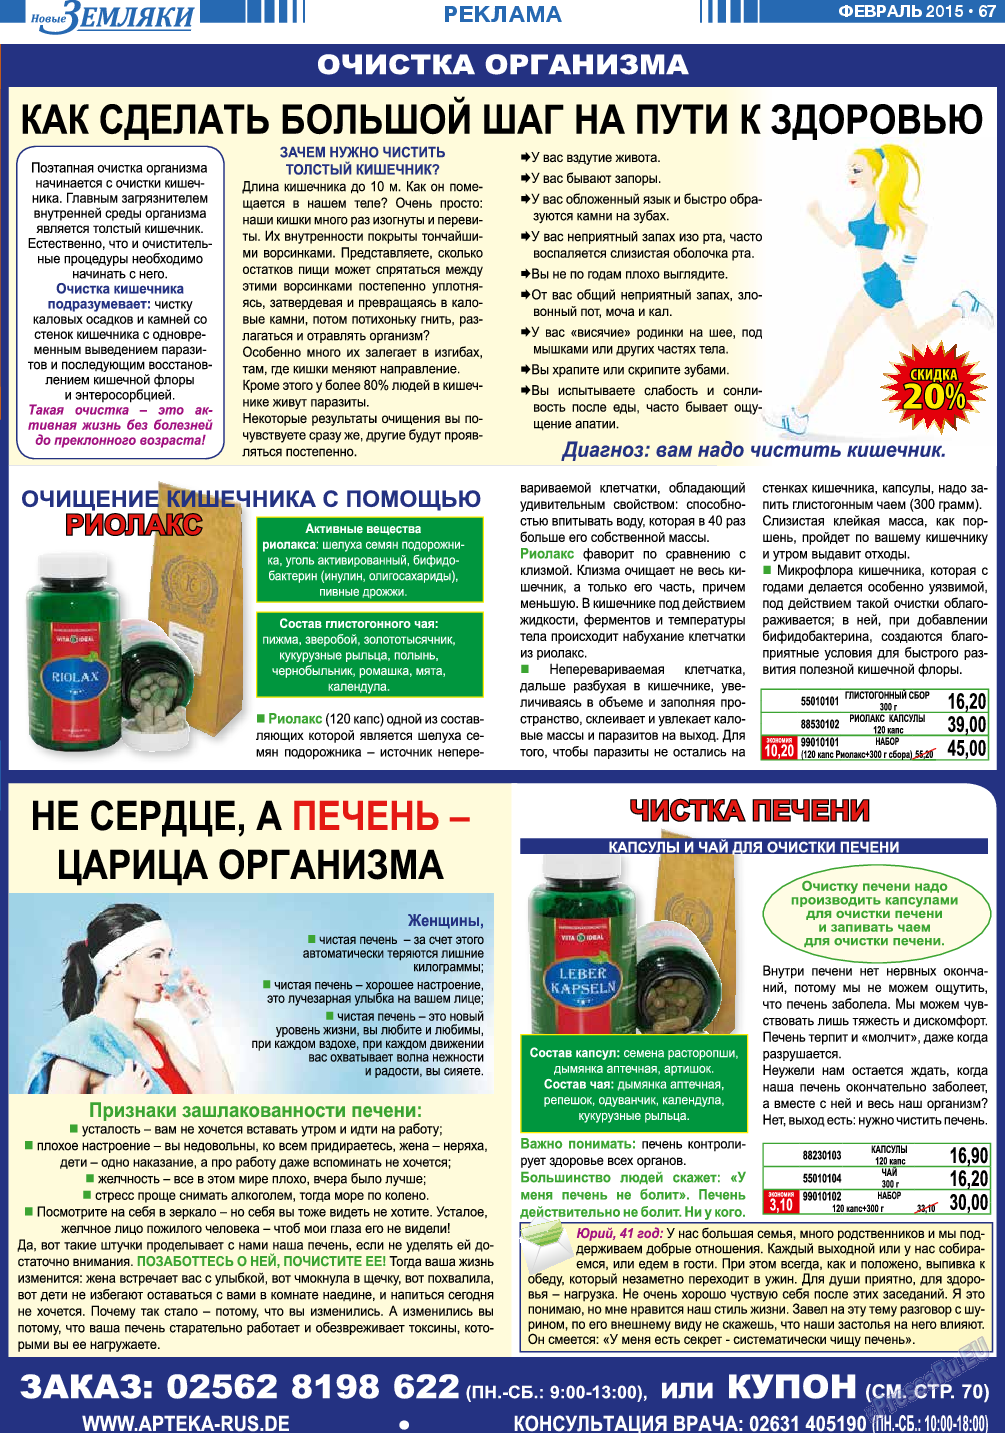 Новые Земляки, газета. 2015 №2 стр.67